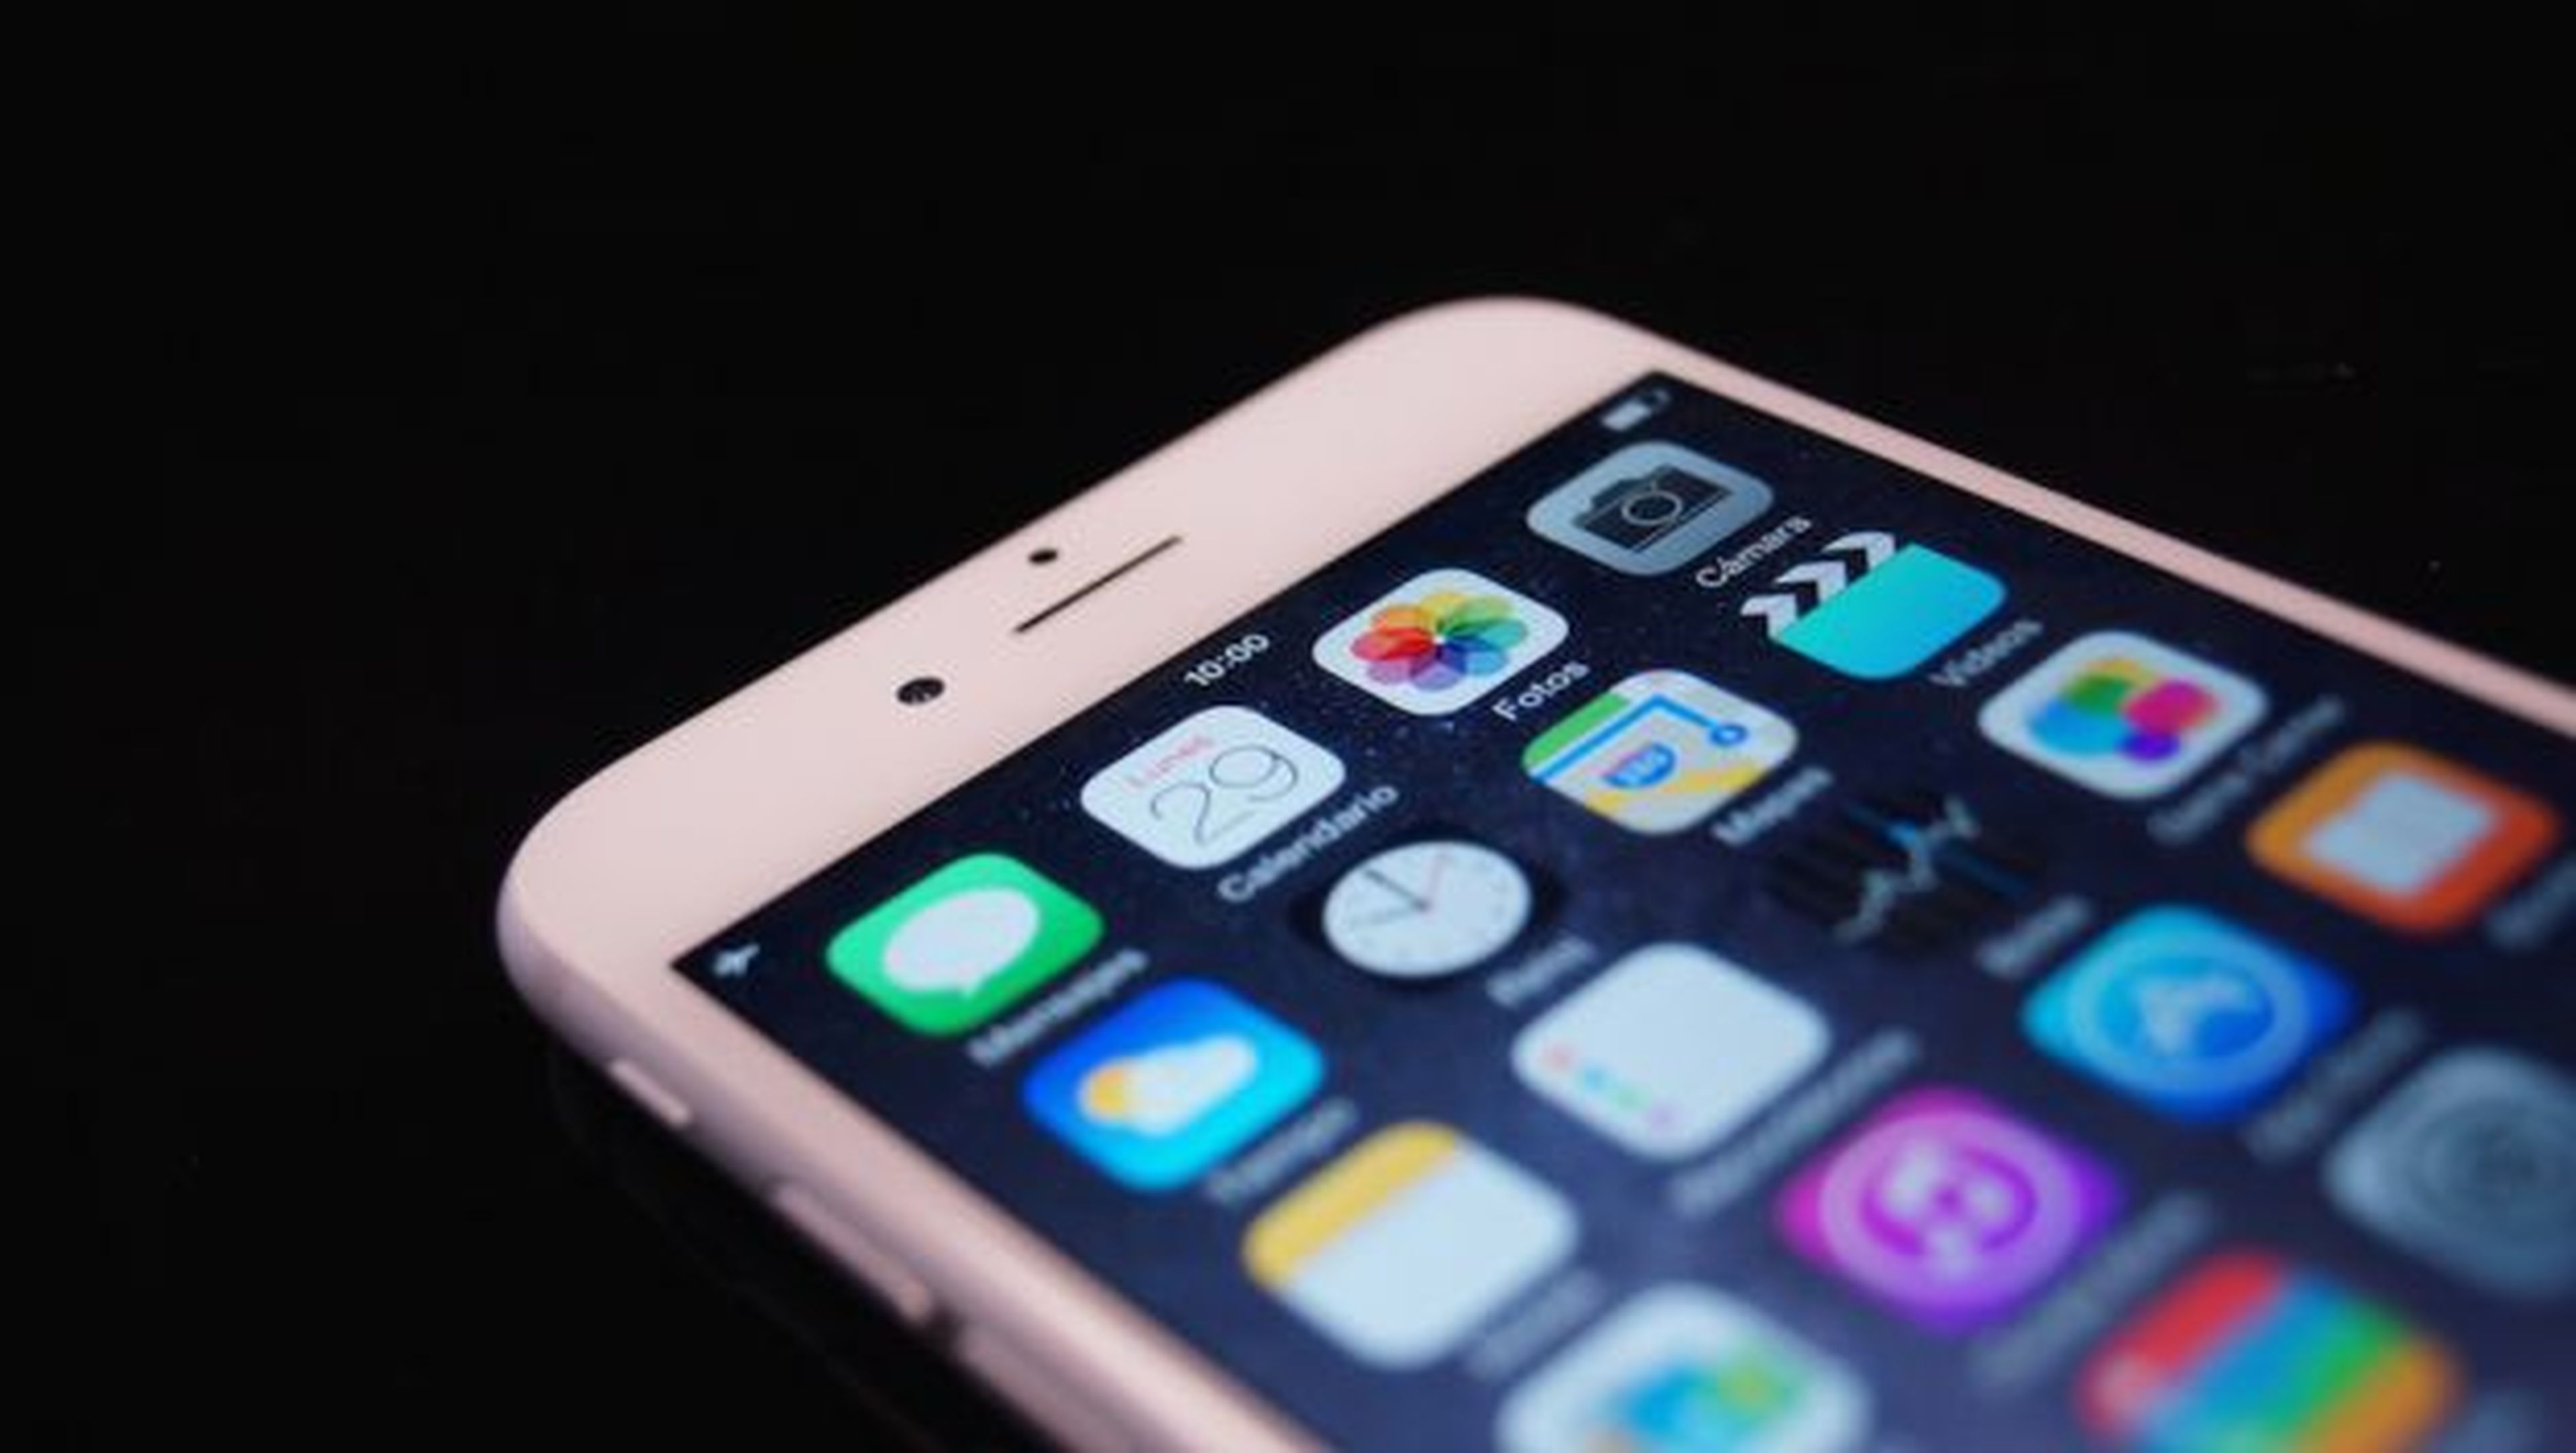 Un fallo de seguridad en iOS afecta a más de 1.500 apps